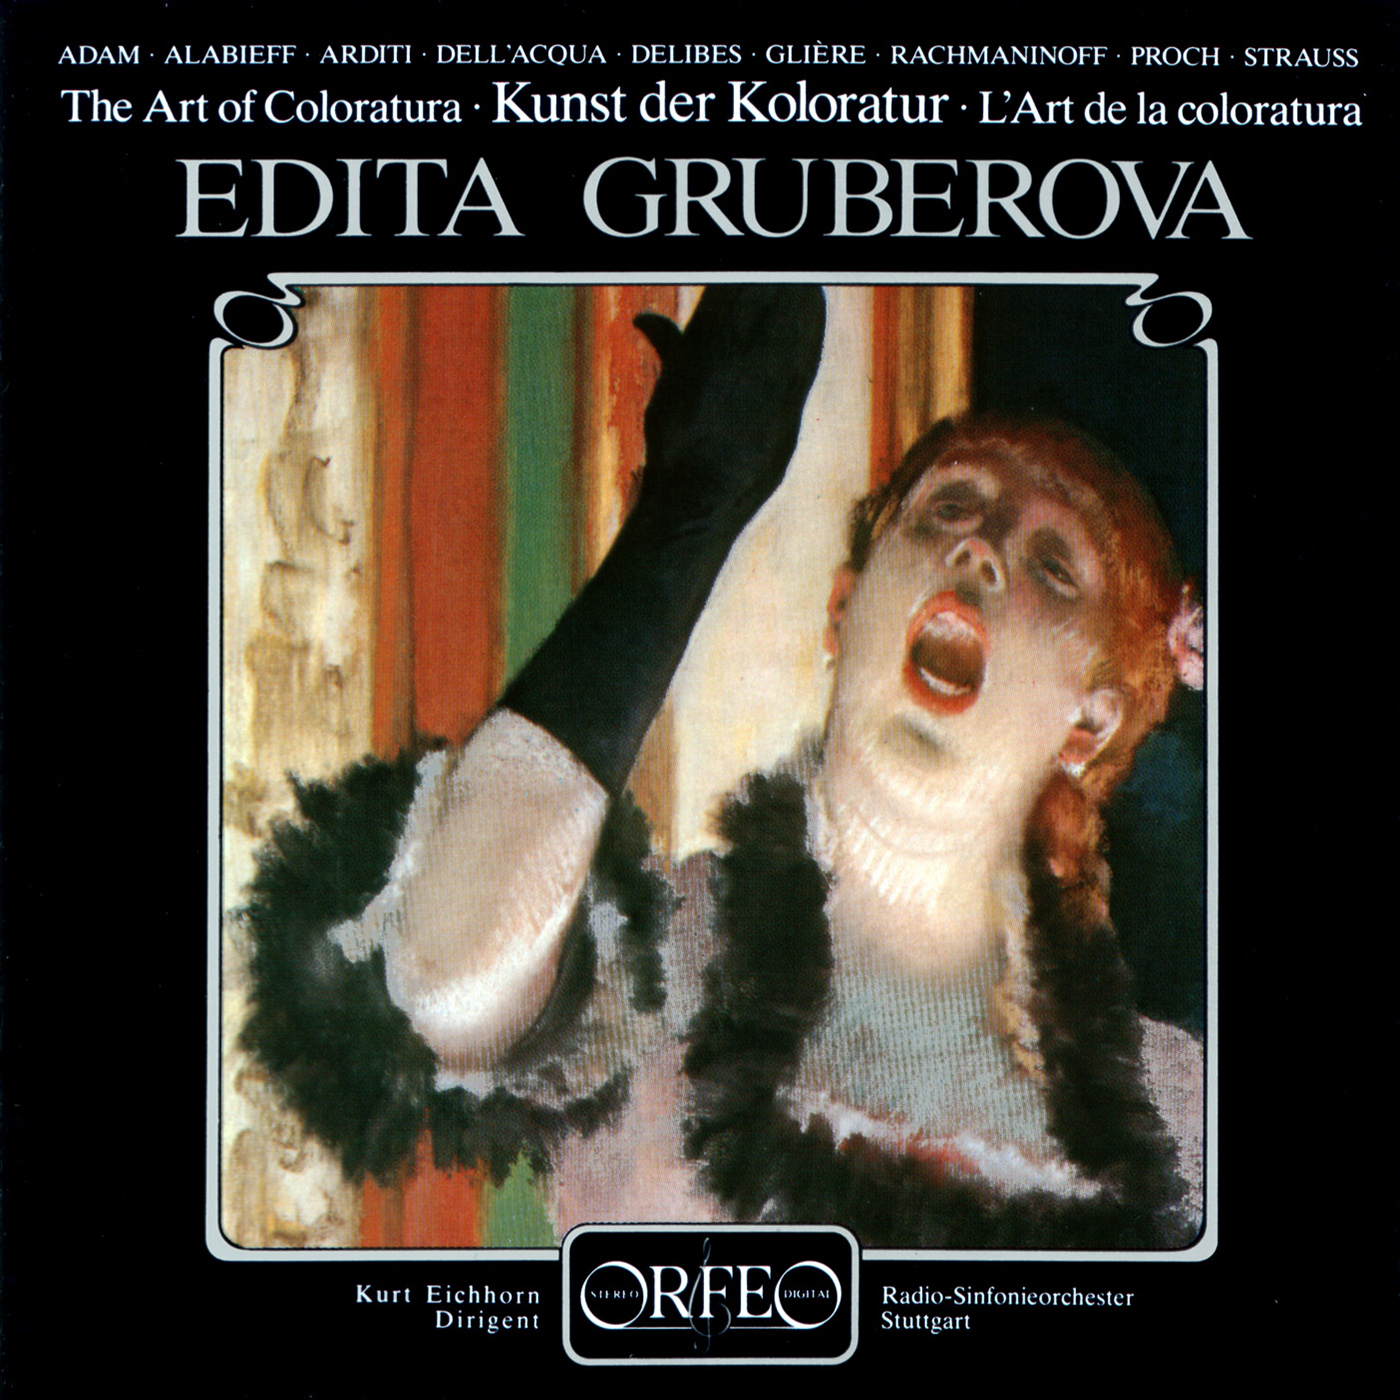 Vocal Recital Soprano: Gruberova, Edita  ARDITI, L.  GLIÈ RE, R.  RACHMANINOV, S.  PROCH, H.  ADAM, A.  DELIBES, L. The Art of Coloratura